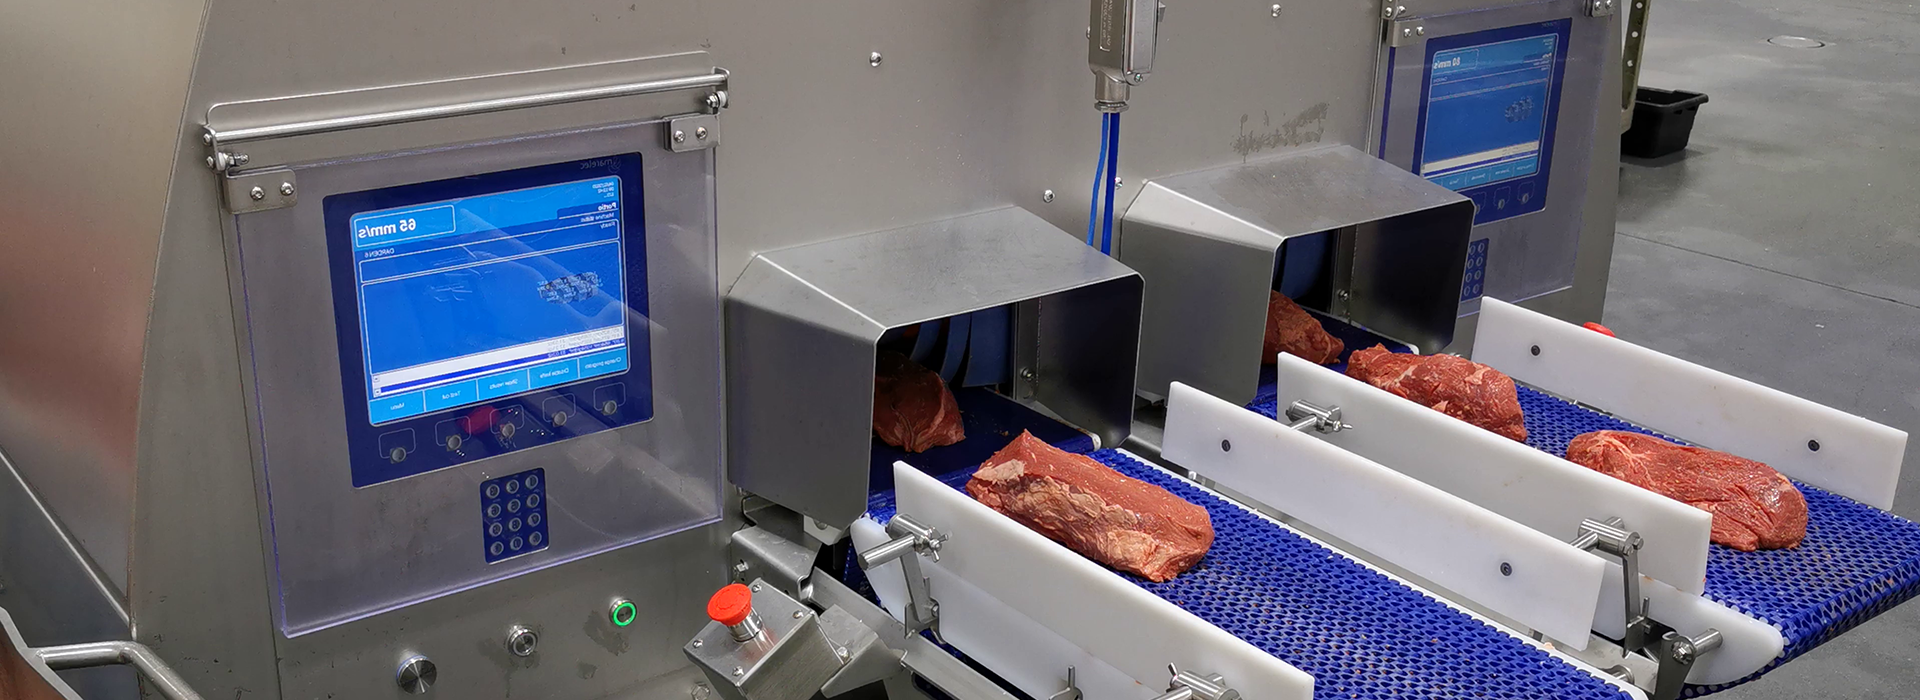 PORTIO 3D切割机适用于圆形的红肉产品如牛排，西冷，眼肉，里脊，猪里脊等。